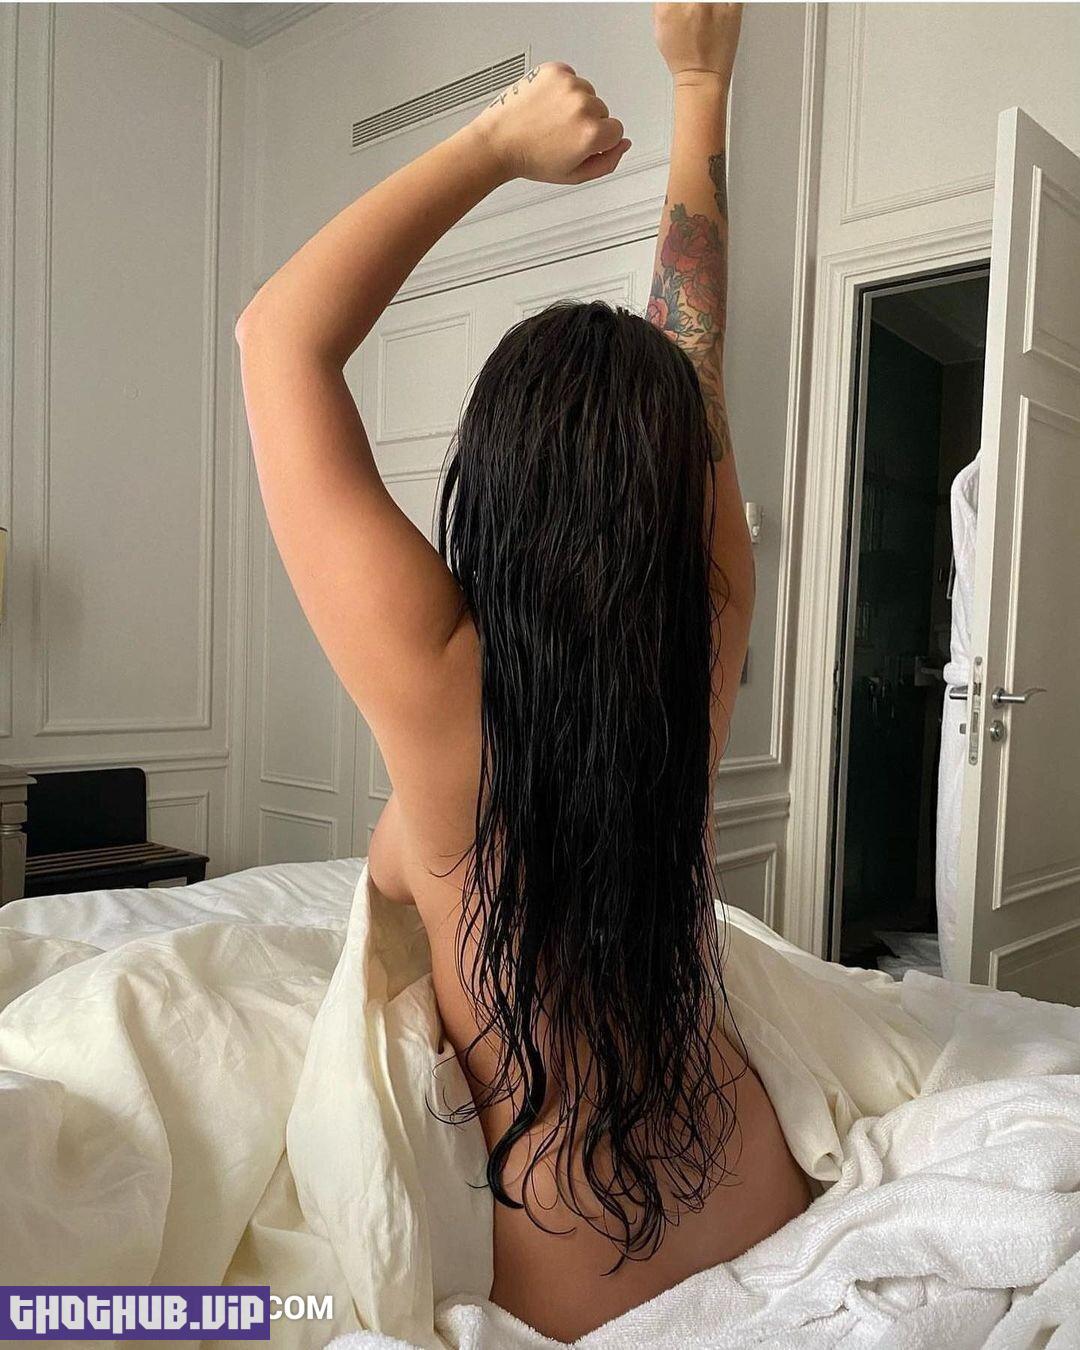 Laura Von Instagram Naked Influencer - Gallucci Onlyfans Leaked Videos